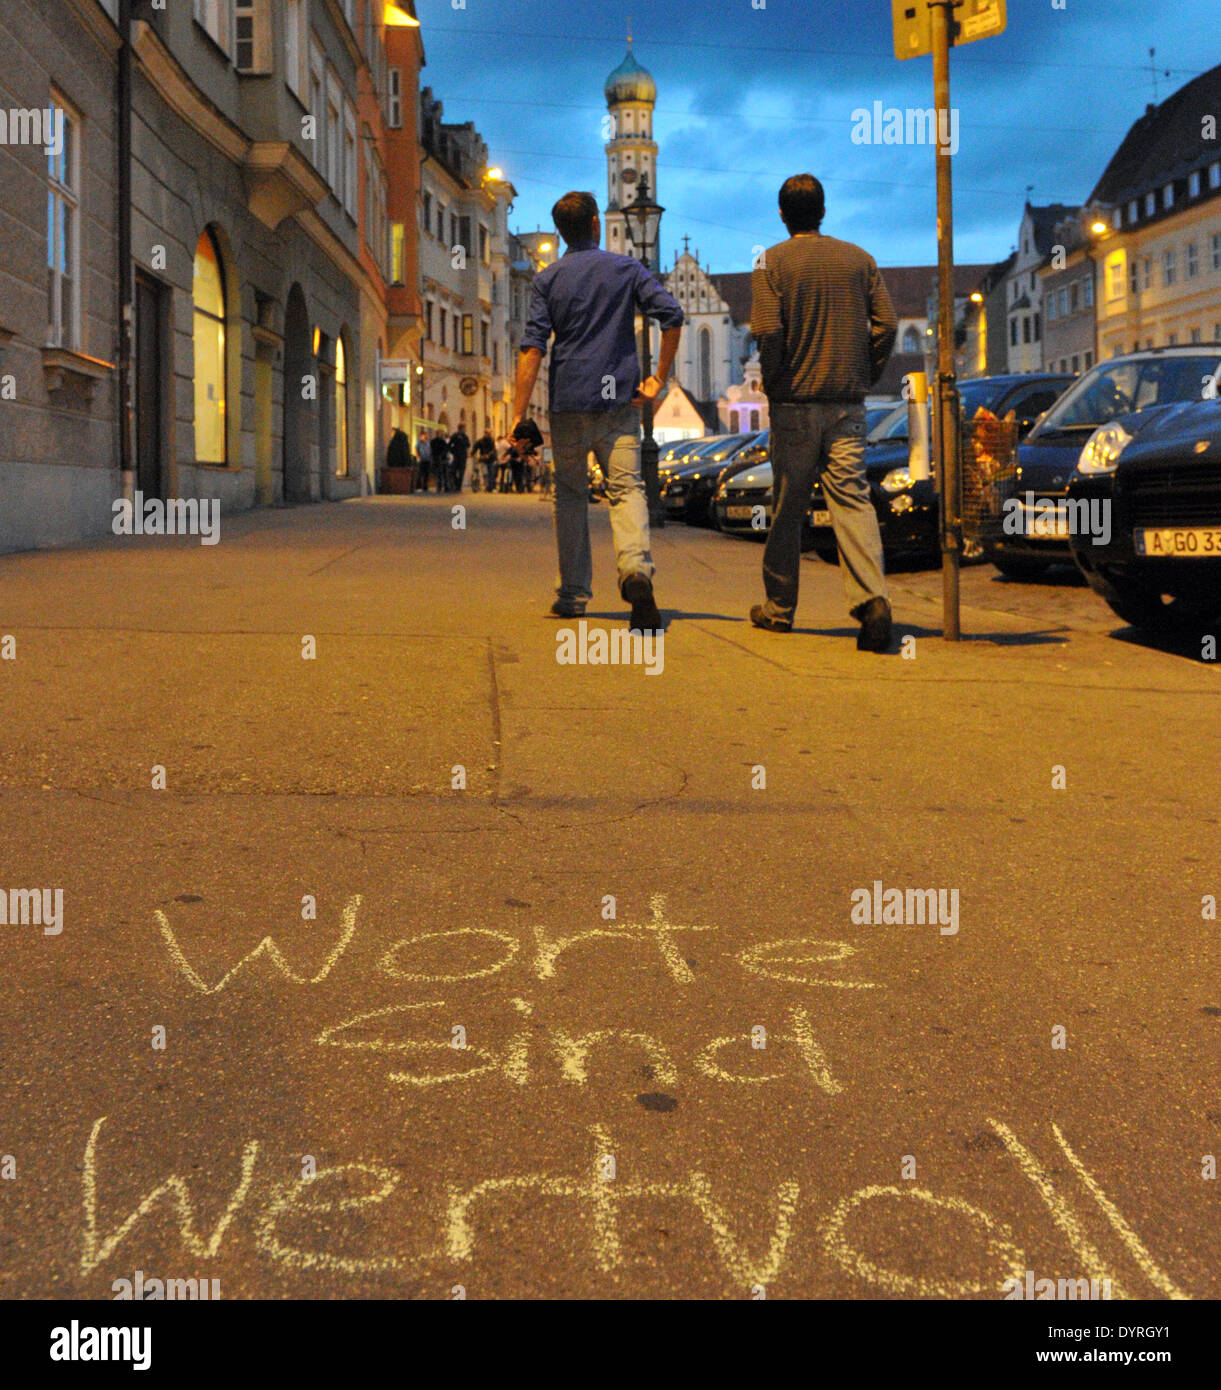 "Worte Sind Wertvoll", ein Protest von Journalisten in Augsburg, 2011 Stockfoto